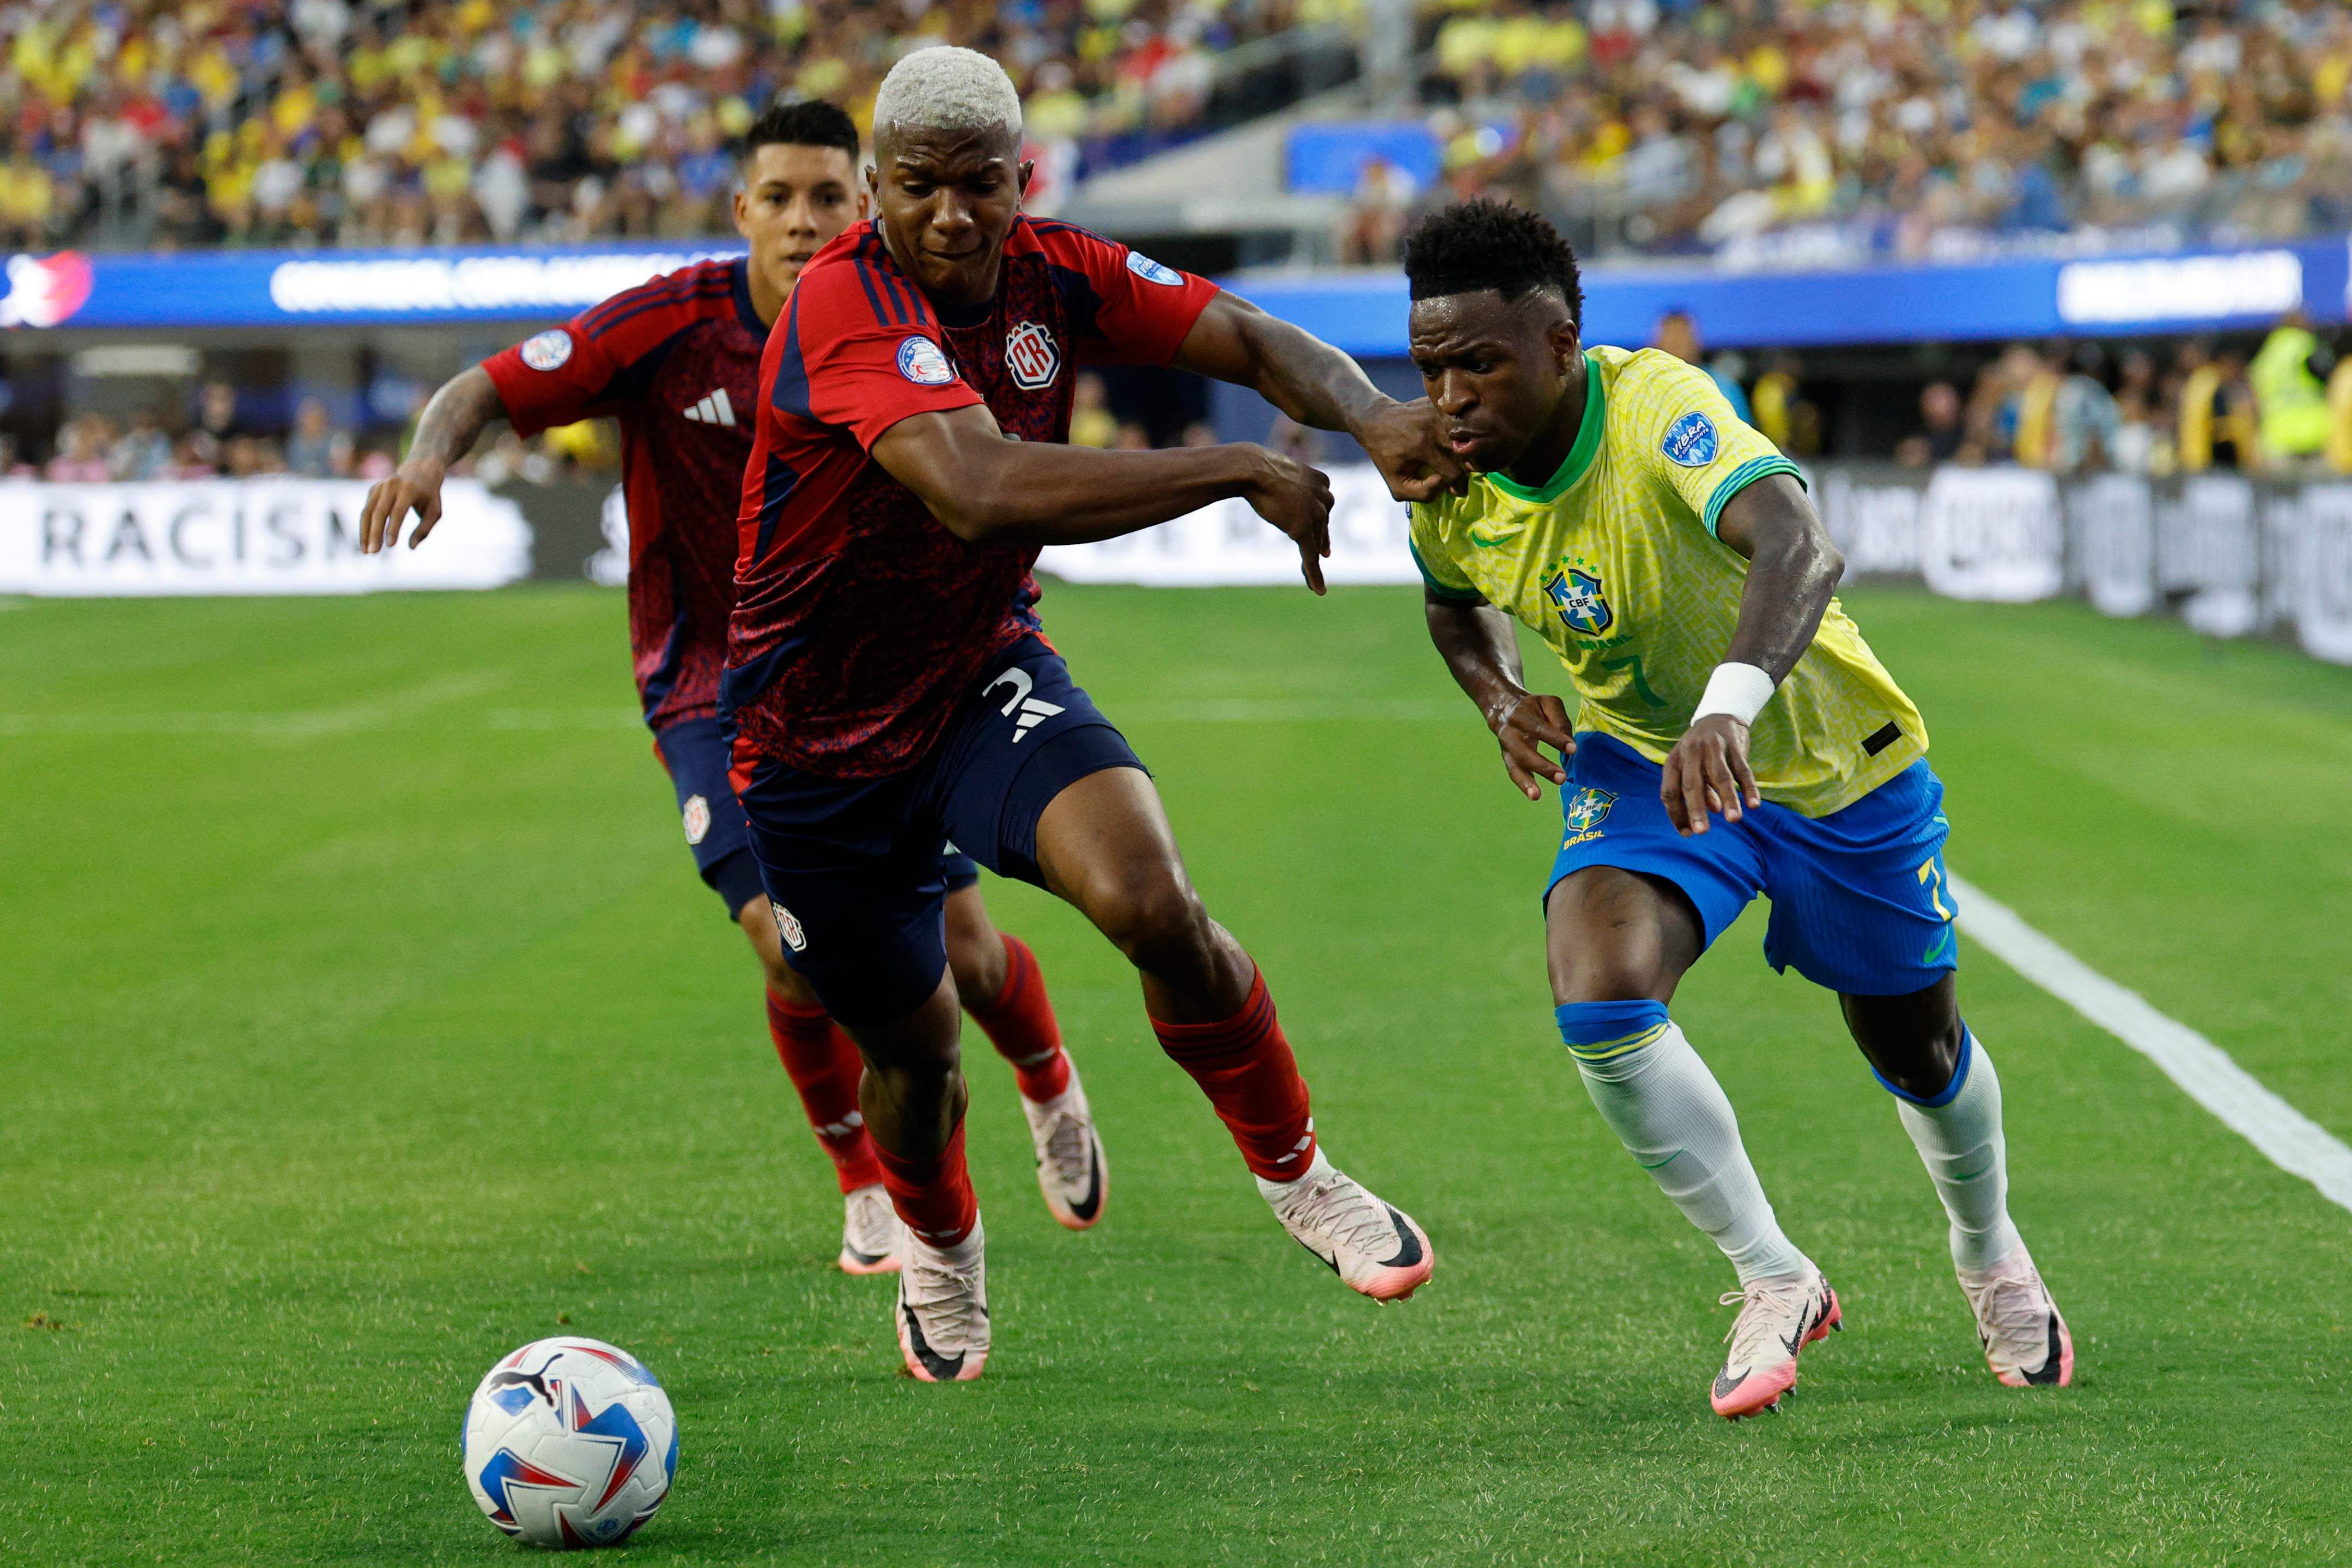 La Sele vuelve a jugar este martes en la Copa América
 / GETTY IMAGES NORTH AMERICA / Getty Images via AFP)